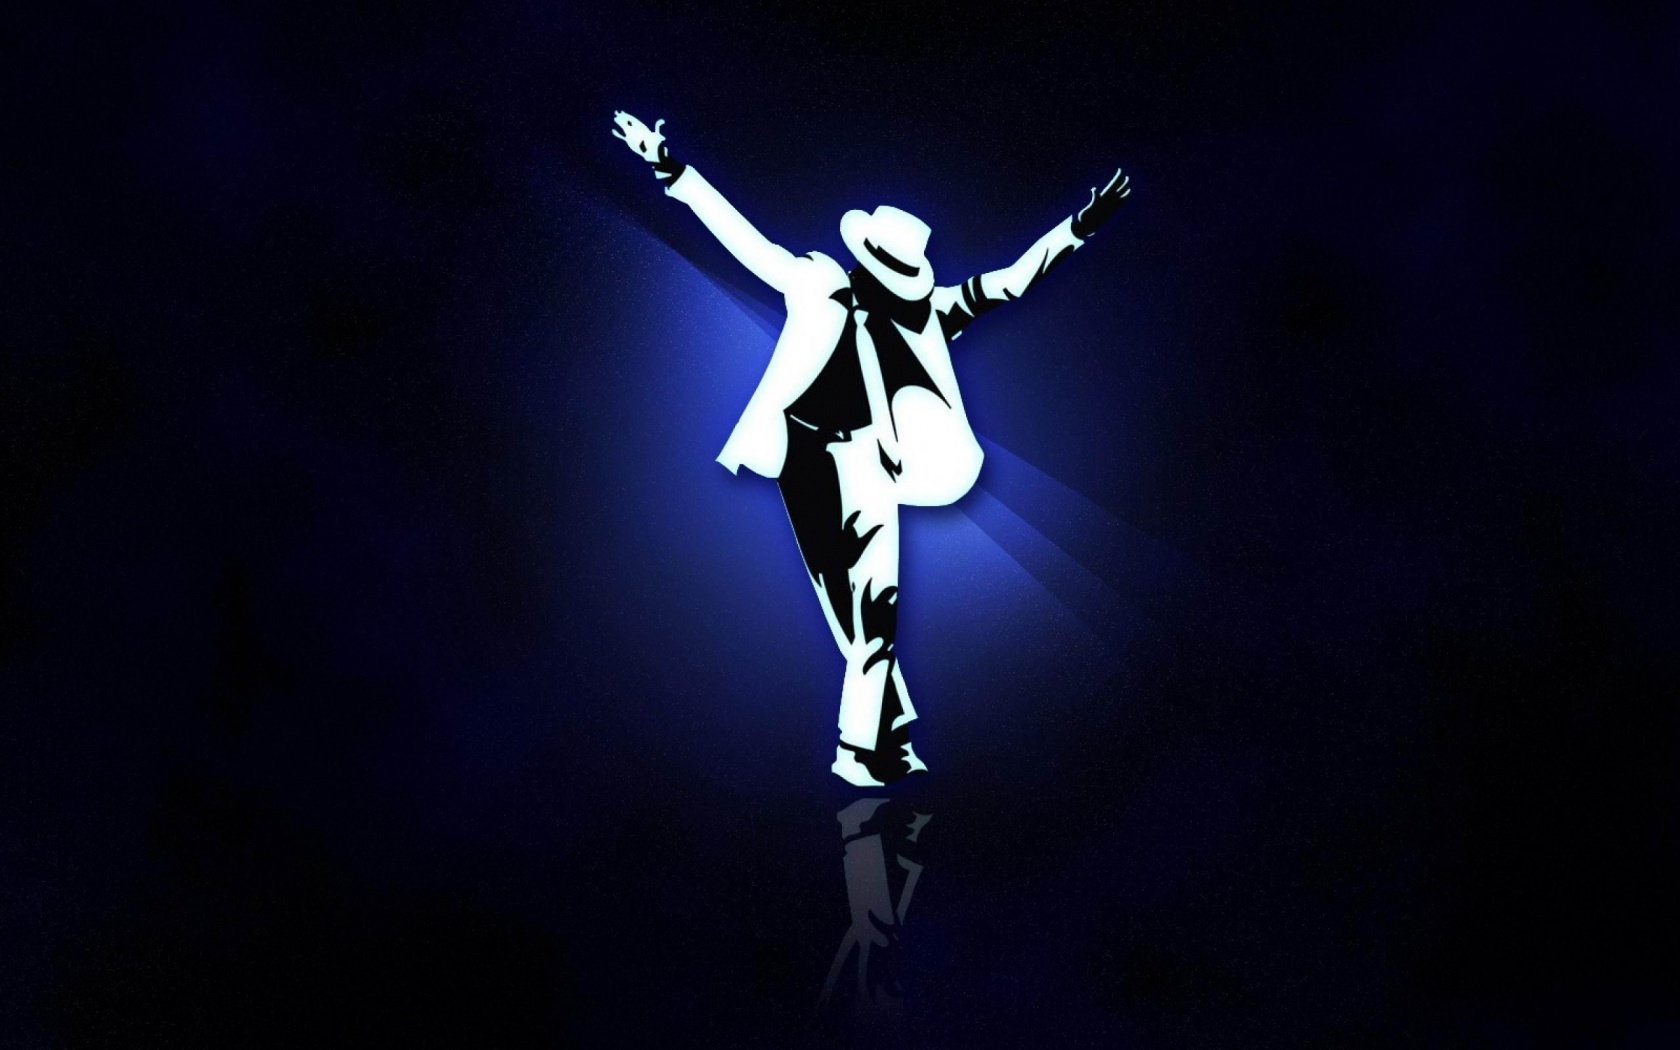 Abstract Michael Jackson